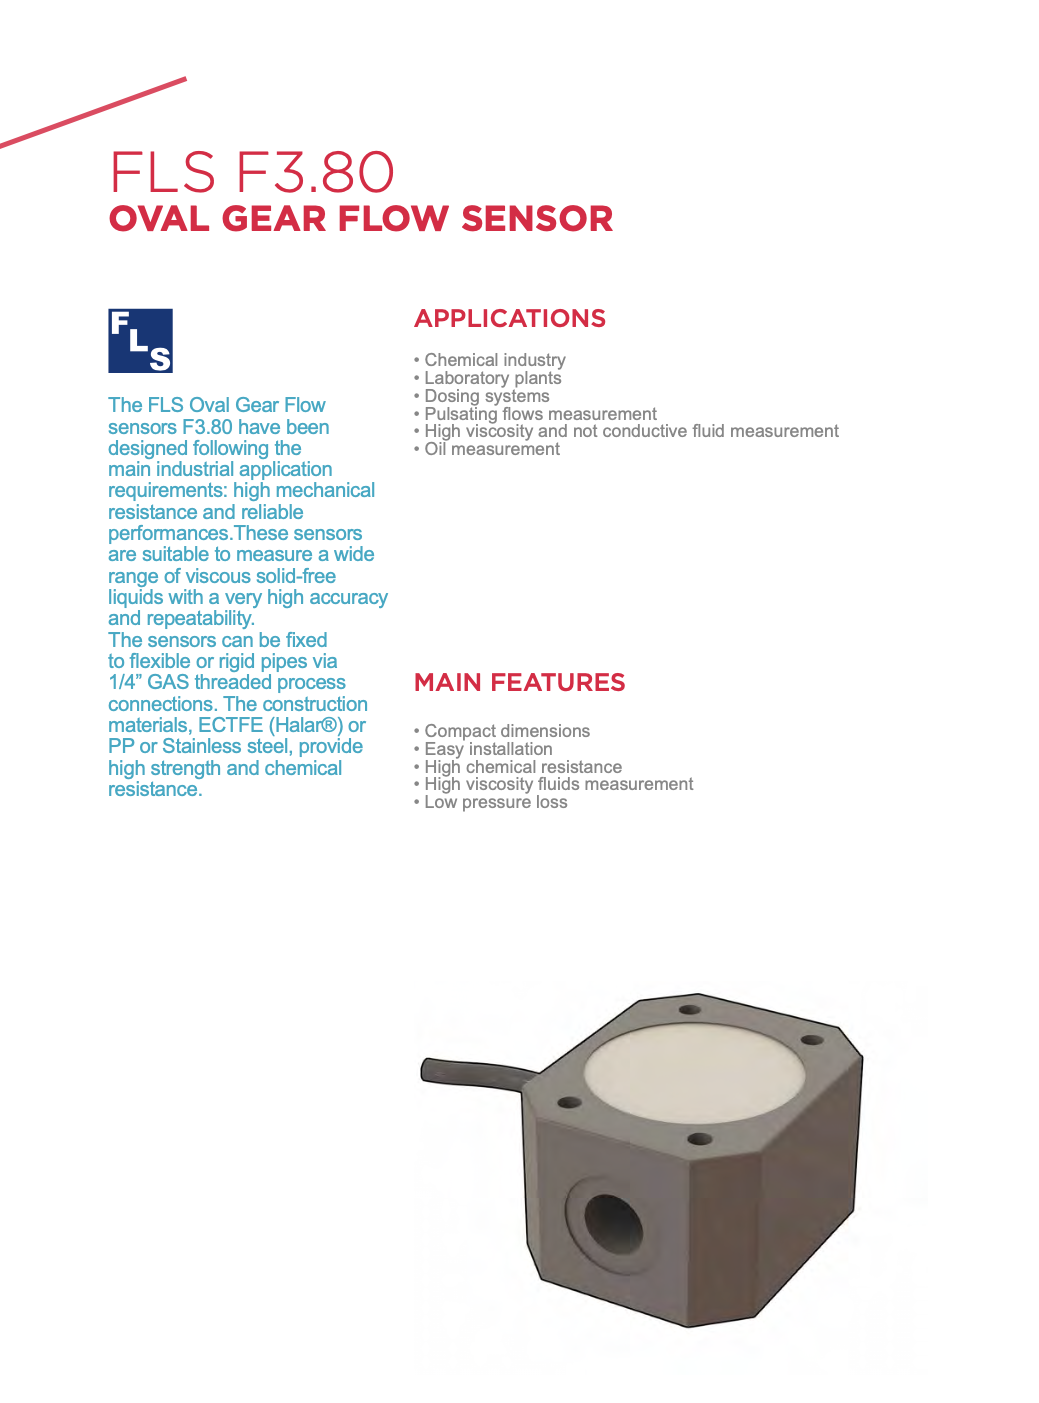 F3.80 Oval Gear Flow Sensor